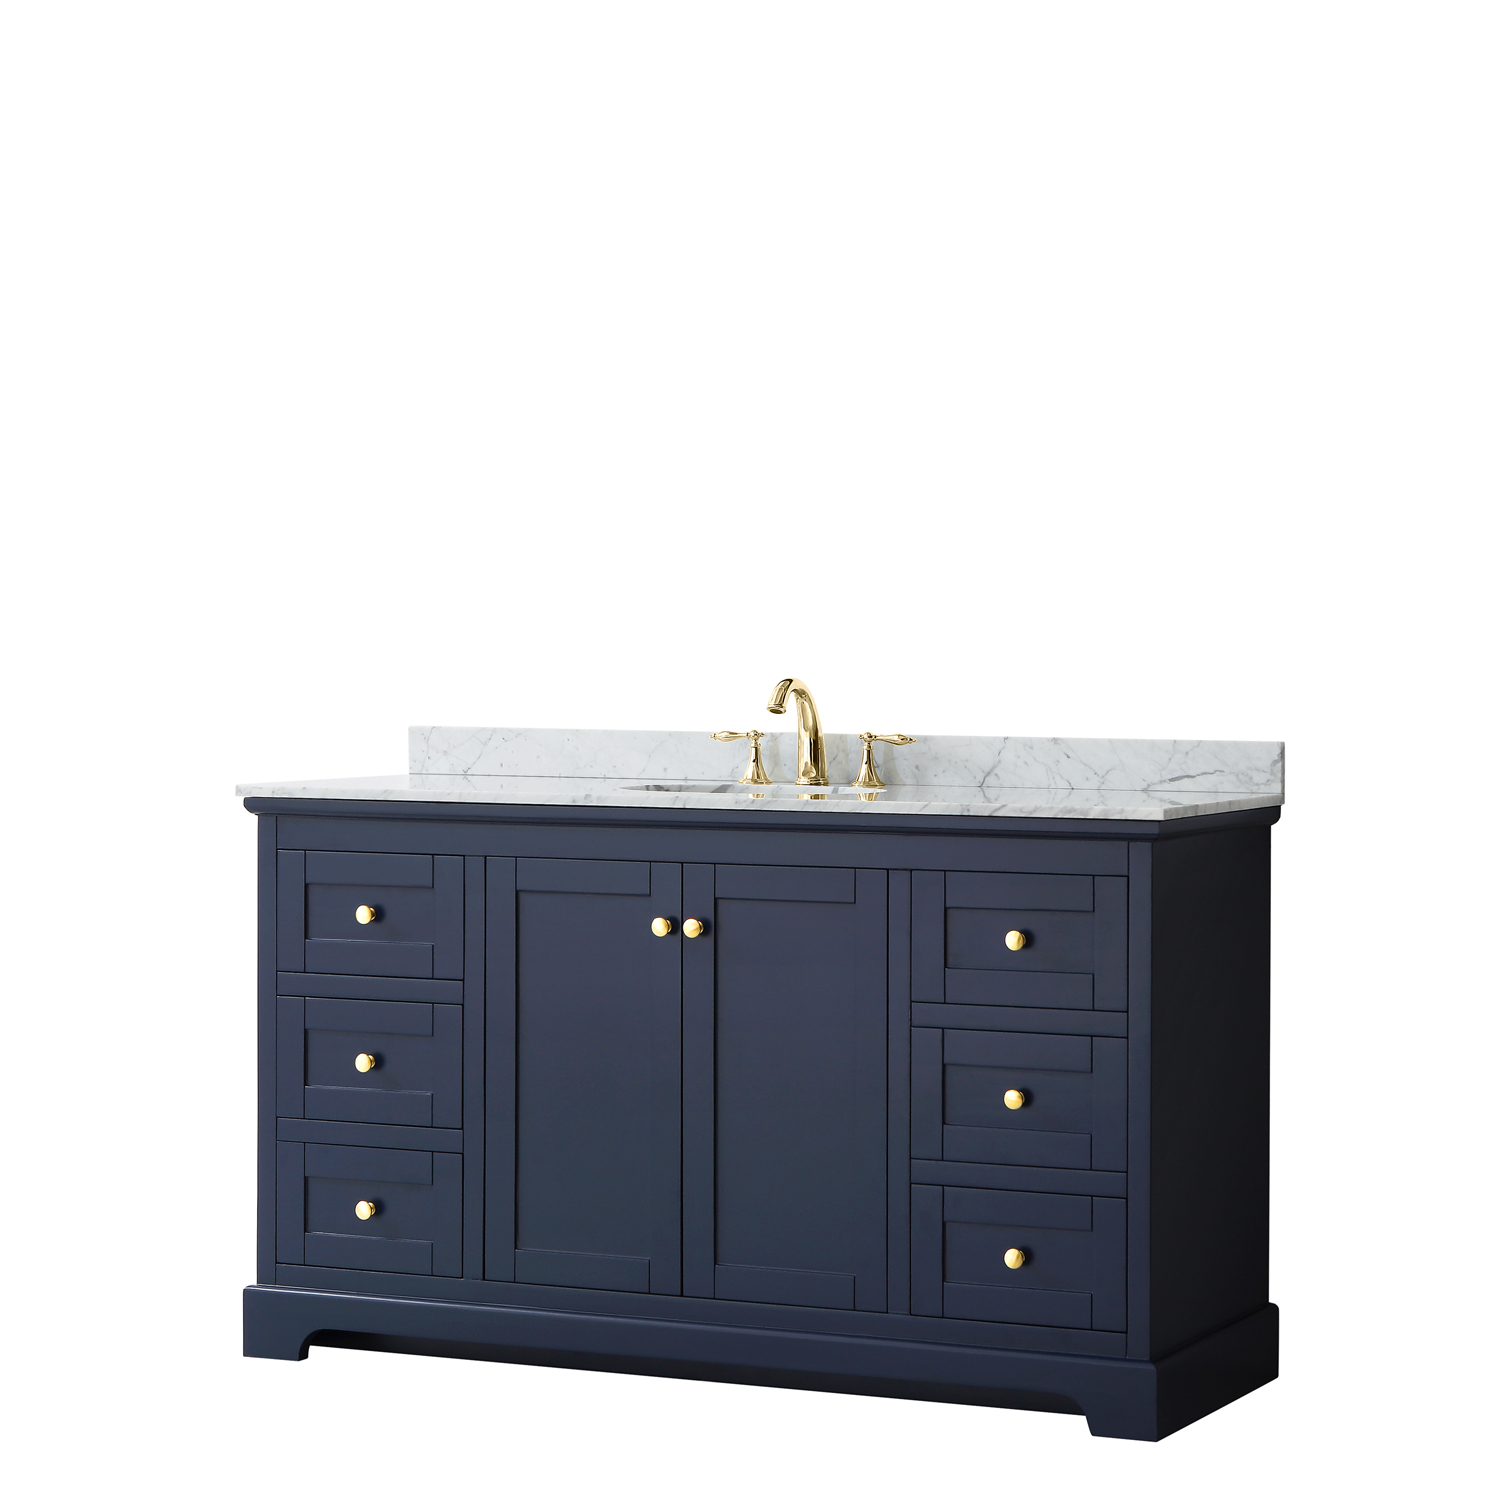 60" Single Bathroom Vanity in Dark Blue, No Countertop, No Sink, and No Mirror